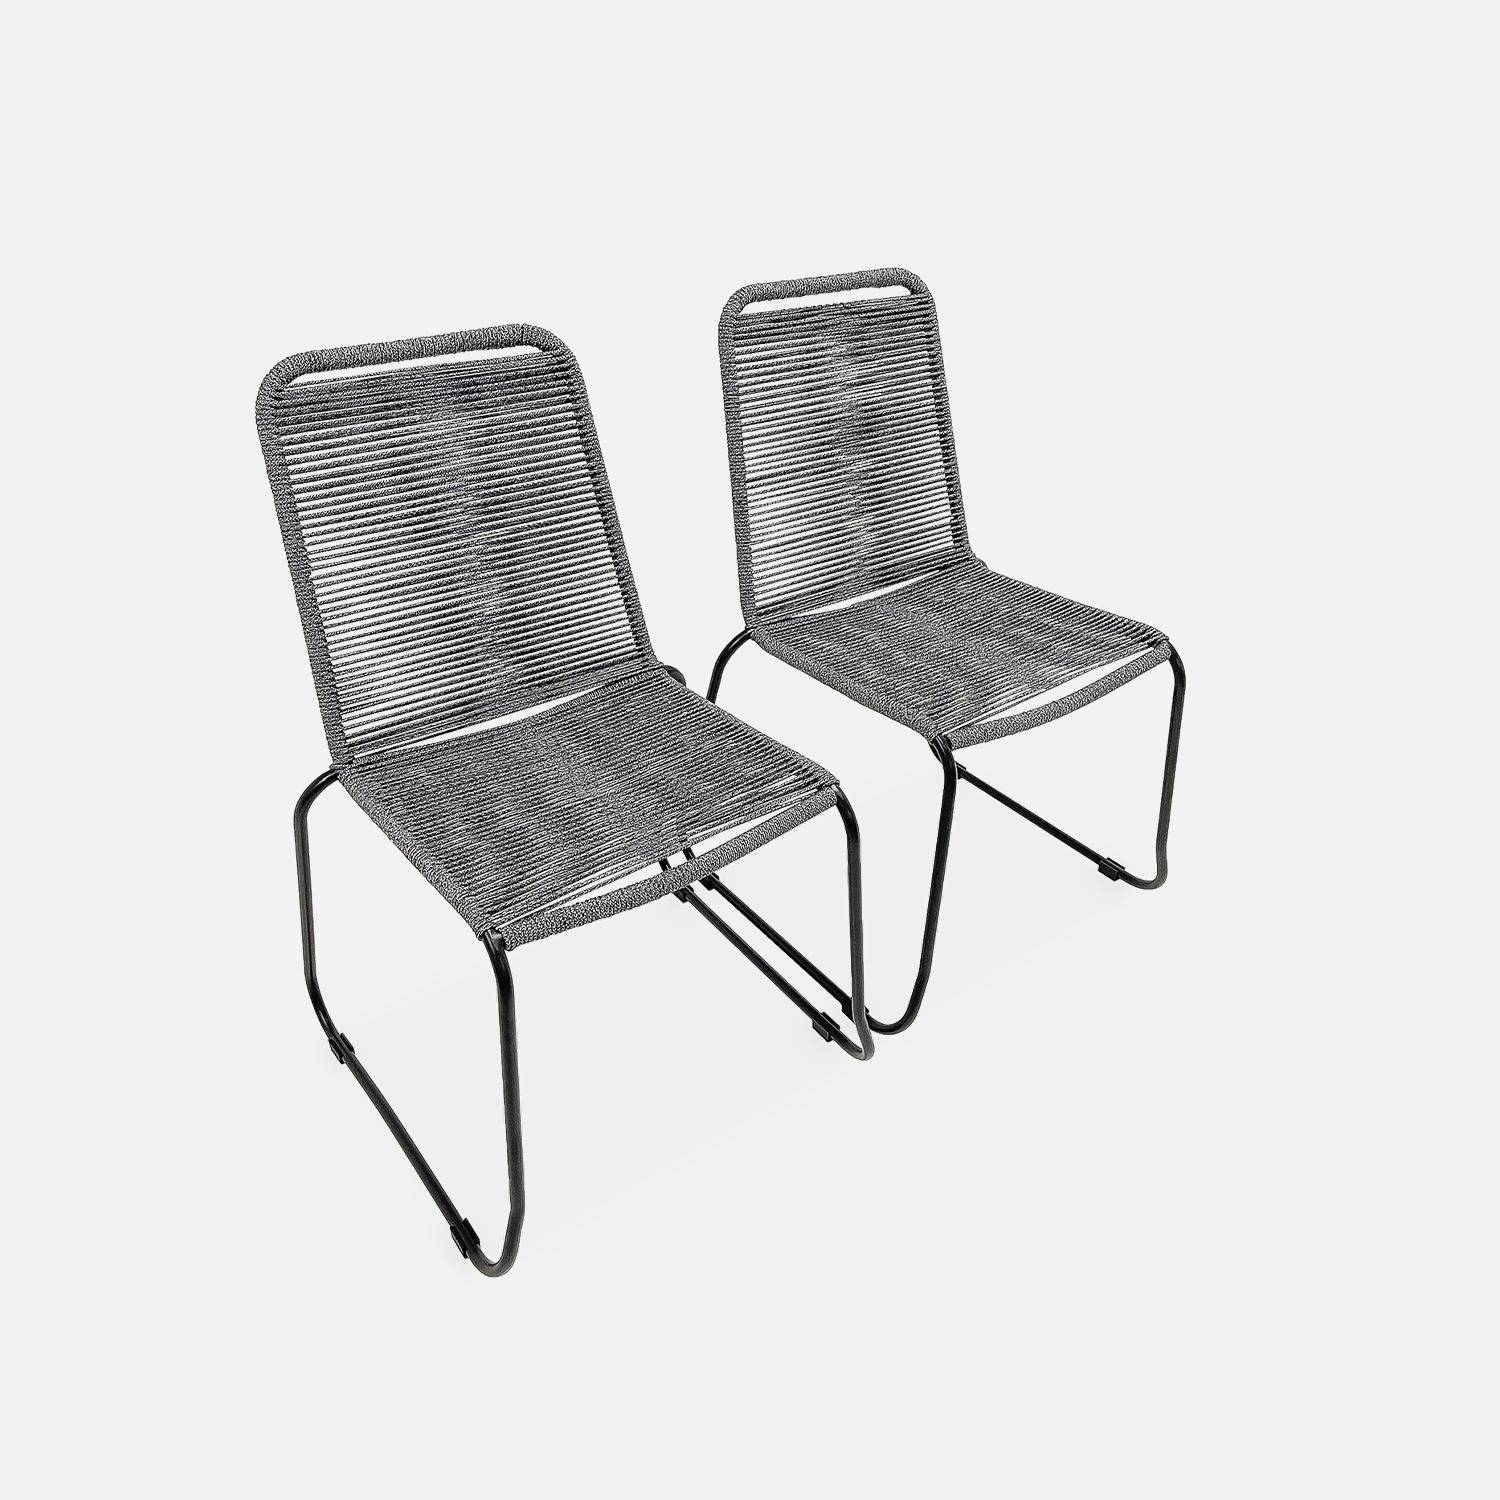 Lote de 2 sillas de jardín de cuerda BRASILIA, gris jaspeado, apilables, para exterior Photo4